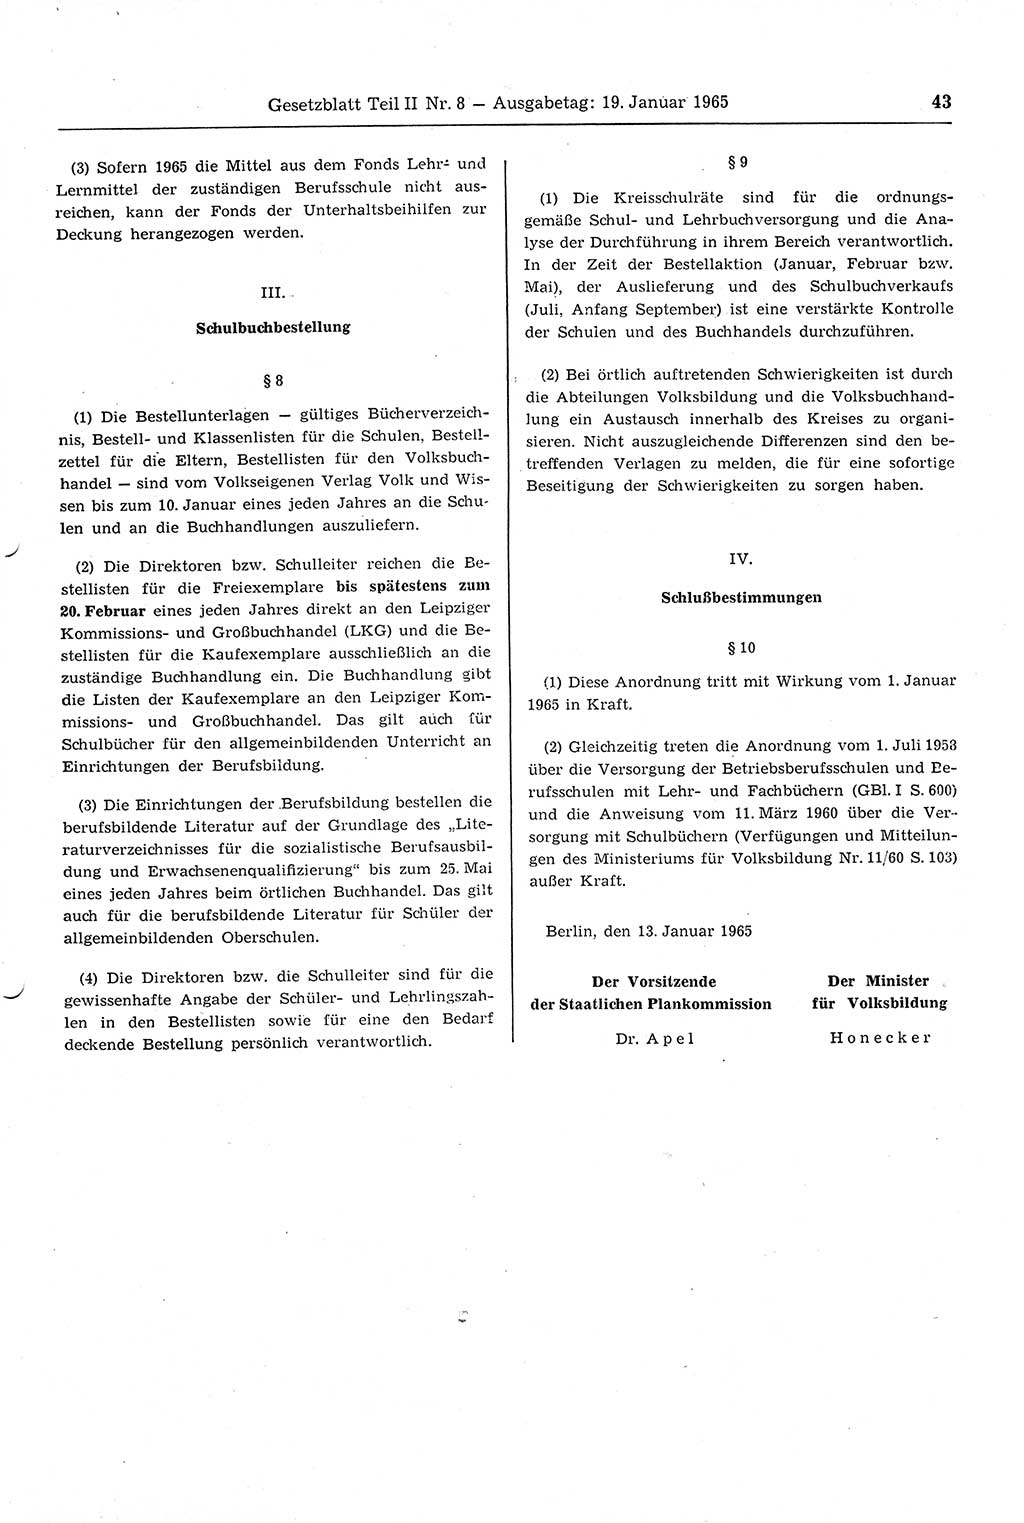 Gesetzblatt (GBl.) der Deutschen Demokratischen Republik (DDR) Teil ⅠⅠ 1965, Seite 43 (GBl. DDR ⅠⅠ 1965, S. 43)